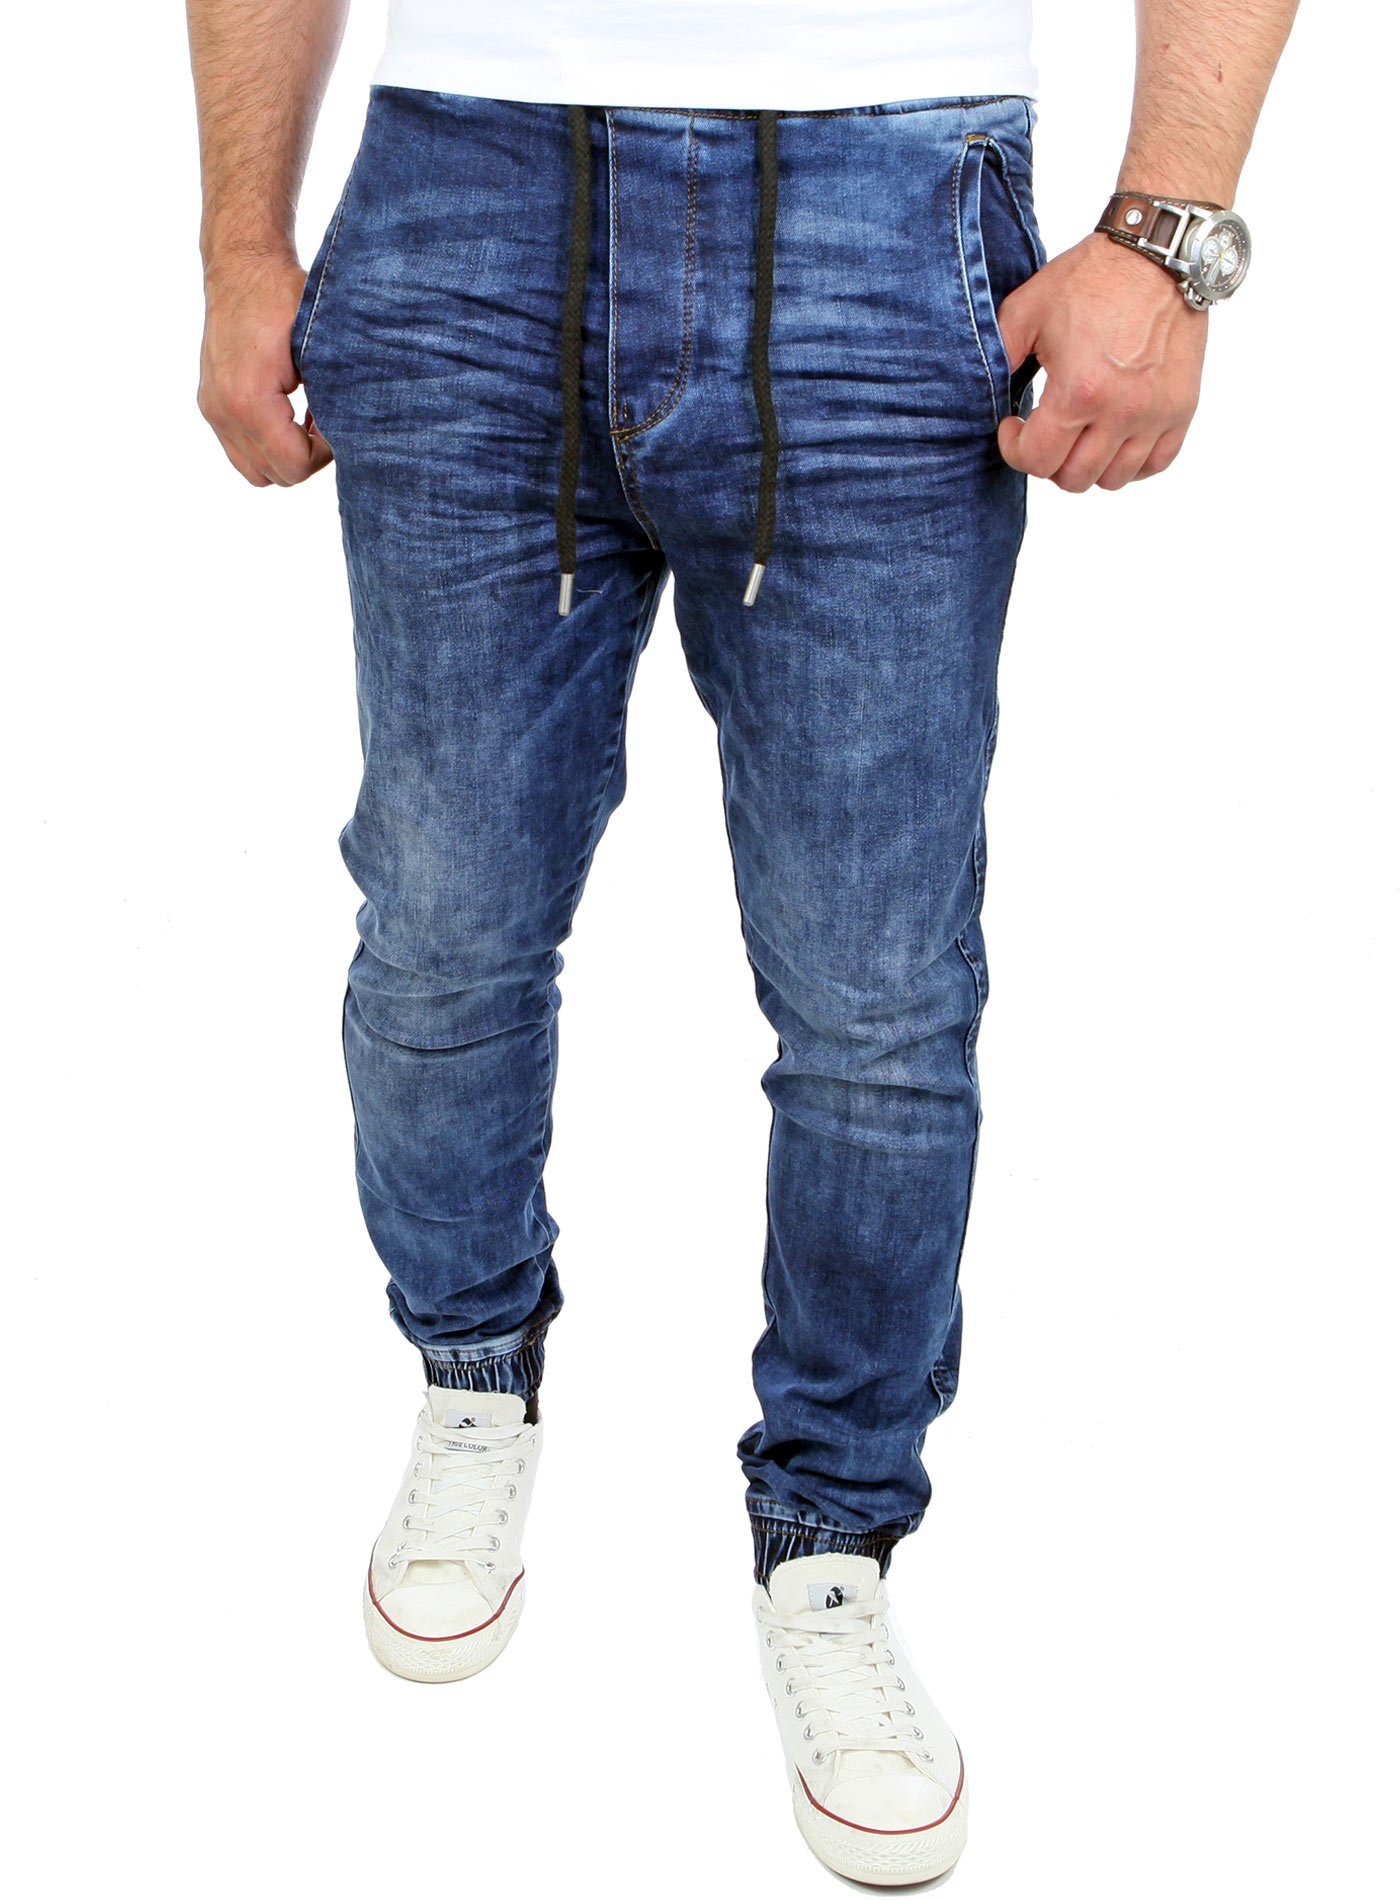 Reslad Stretch-Jeans Reslad Casual Style Jeans-Herren Slim Fit Jogging-Hose RS-2071 Stretch Jogging-Denim Slim Fit blau